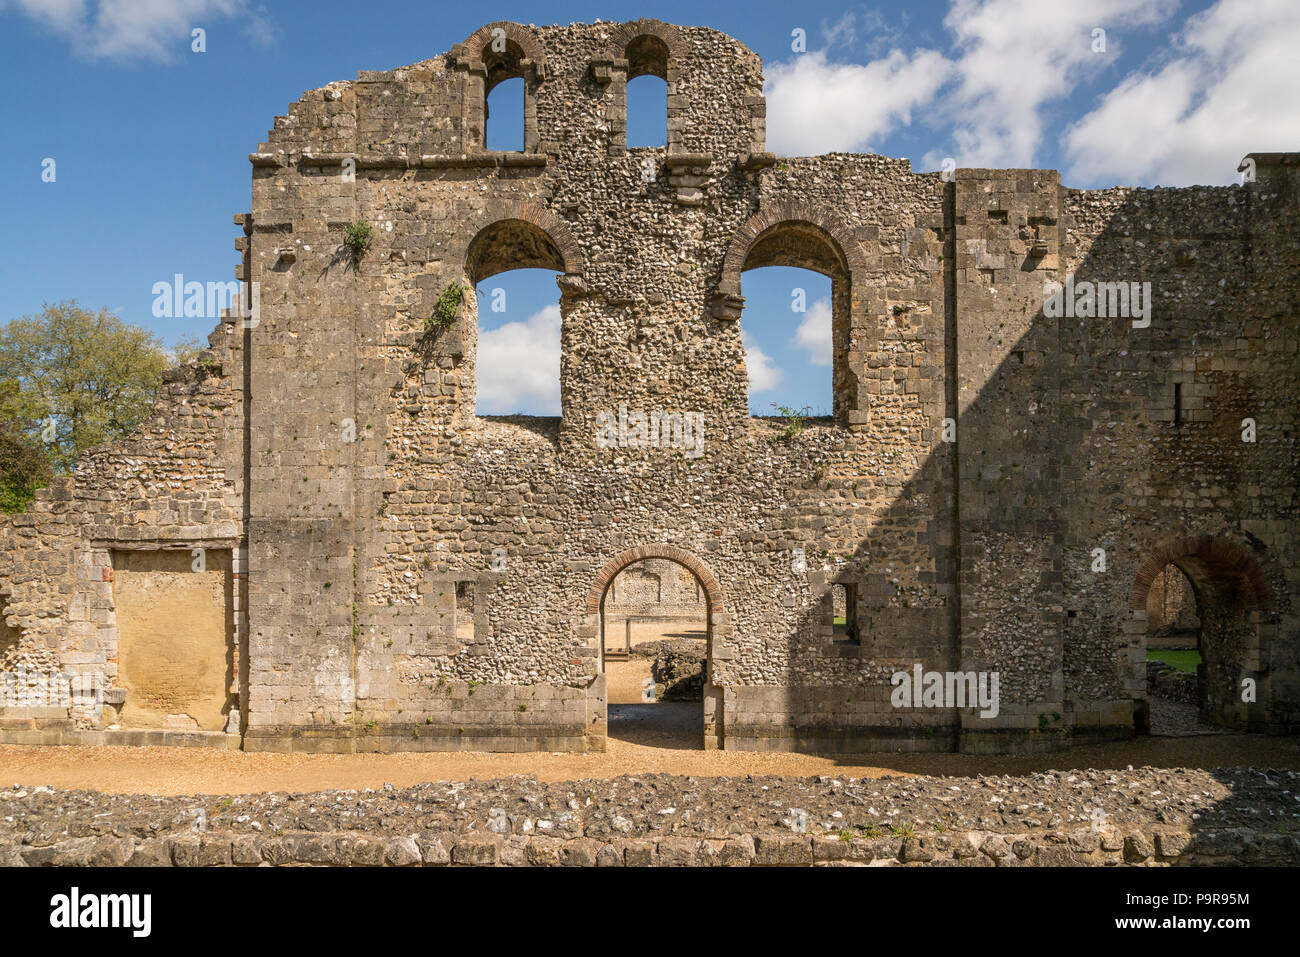 Il castello di Wolvesley a.k.a. Il vecchio palazzo dei vescovi in Winchester, Hampshire, Inghilterra - i resti del XII secolo il palazzo, un tempo residenza dei vescovi di Foto Stock